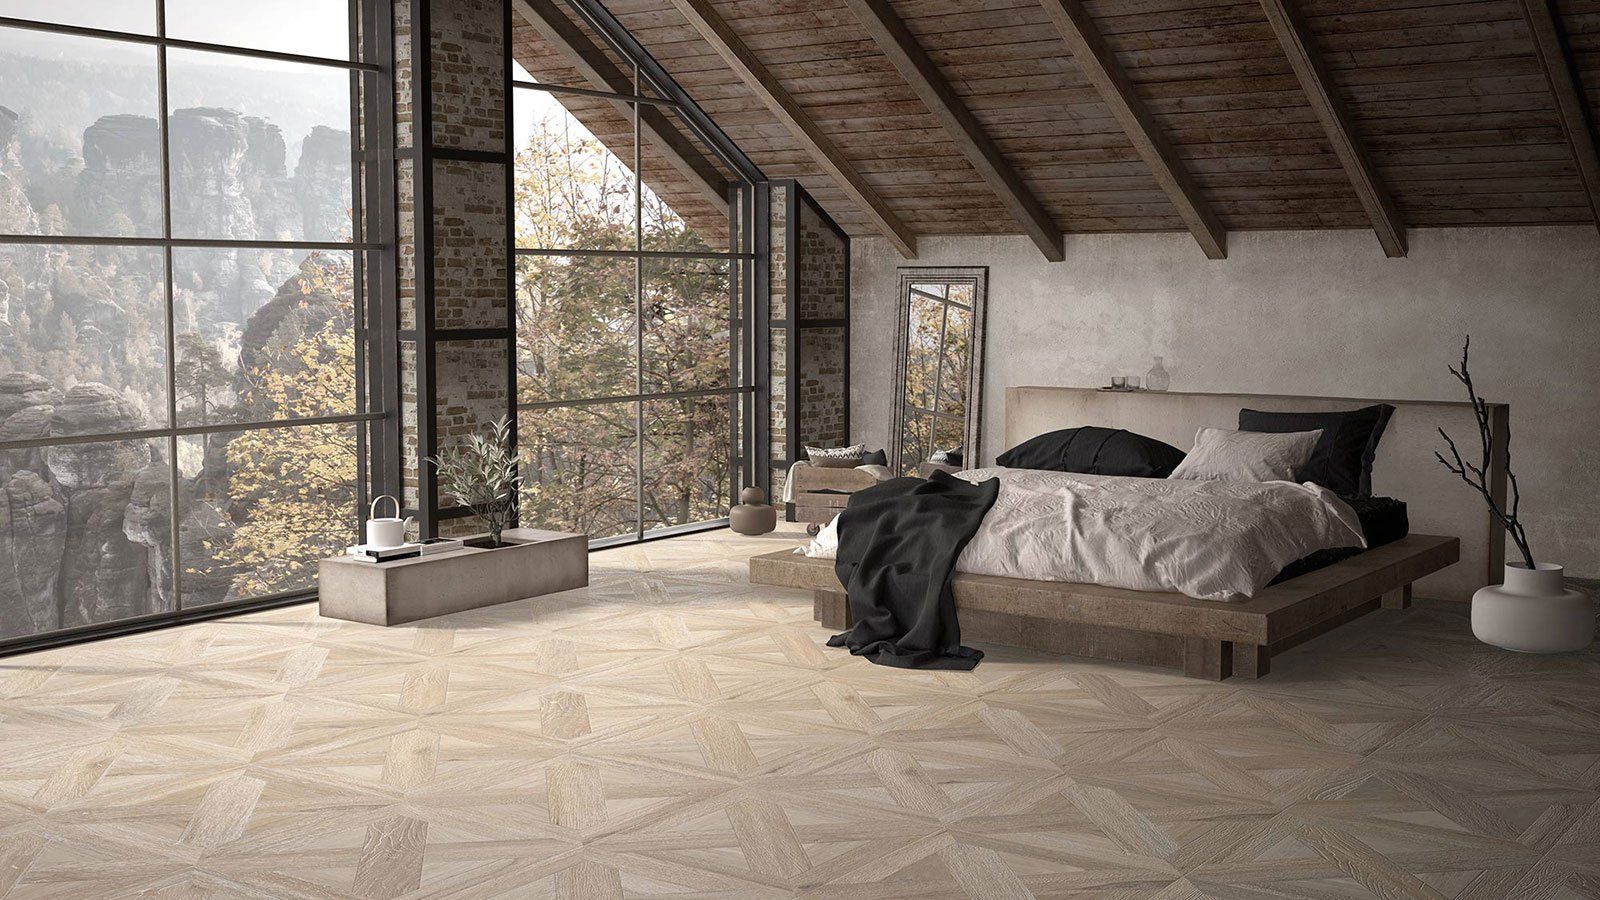 Wood Effect Porcelain Tile in modern bedroom